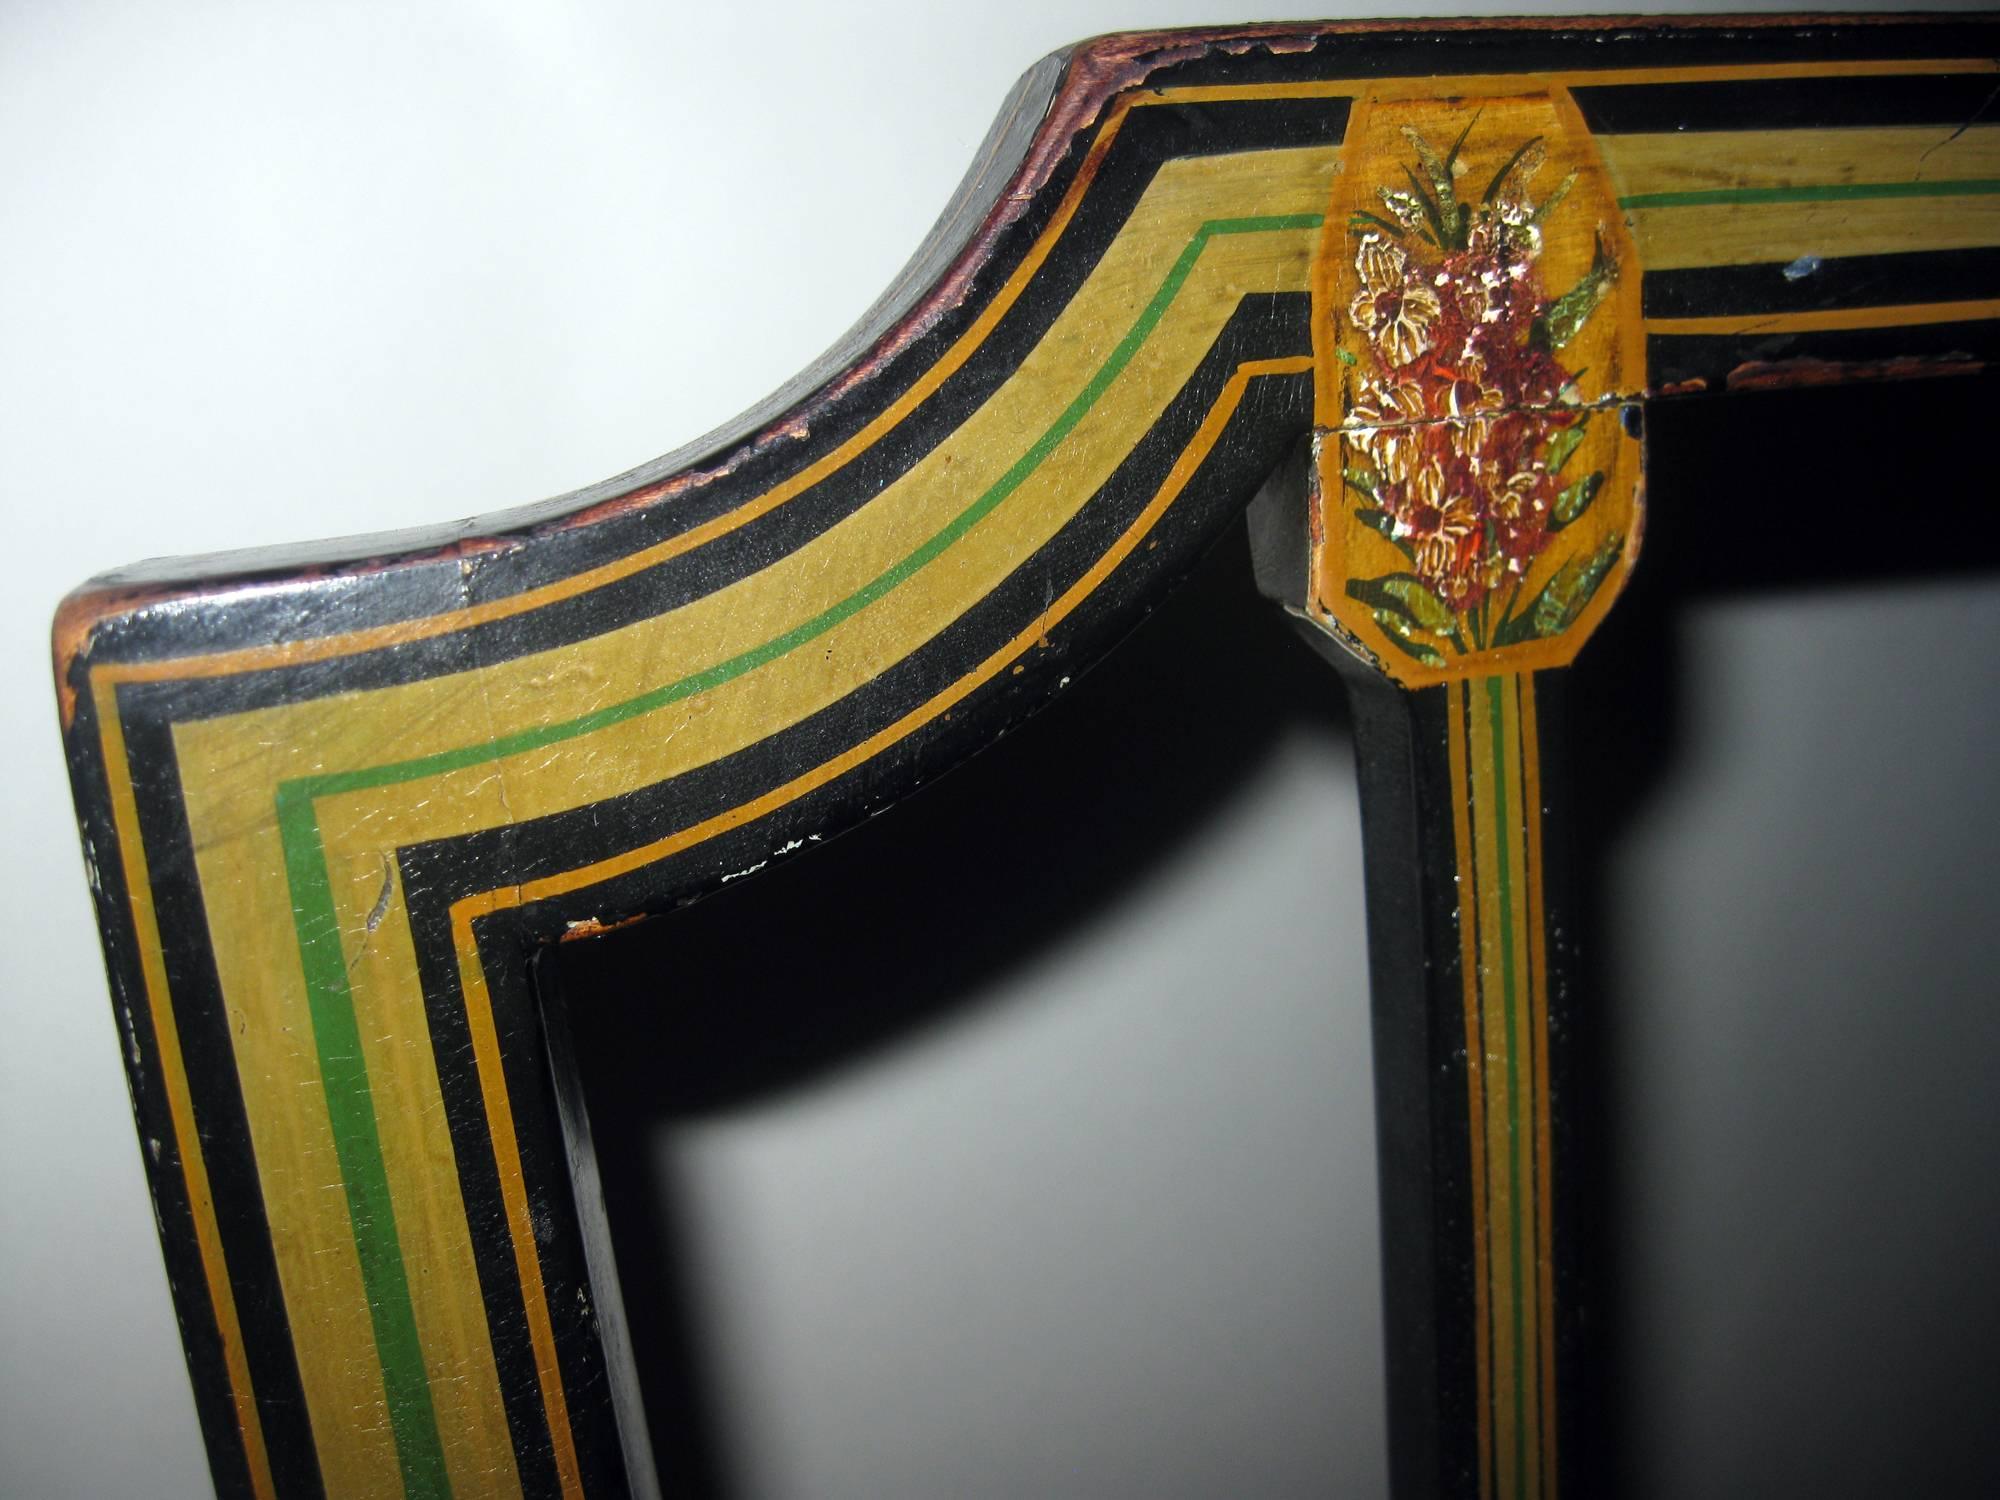 Chaise d'appoint en bois dur peint du début du XIXe siècle, avec pieds en forme de bêche. Peint à la main dans de jolies couleurs avec un motif floral, lyre et linéaire. Peinture d'origine et non restaurée magnifiquement vieillie. L'assise renforcée